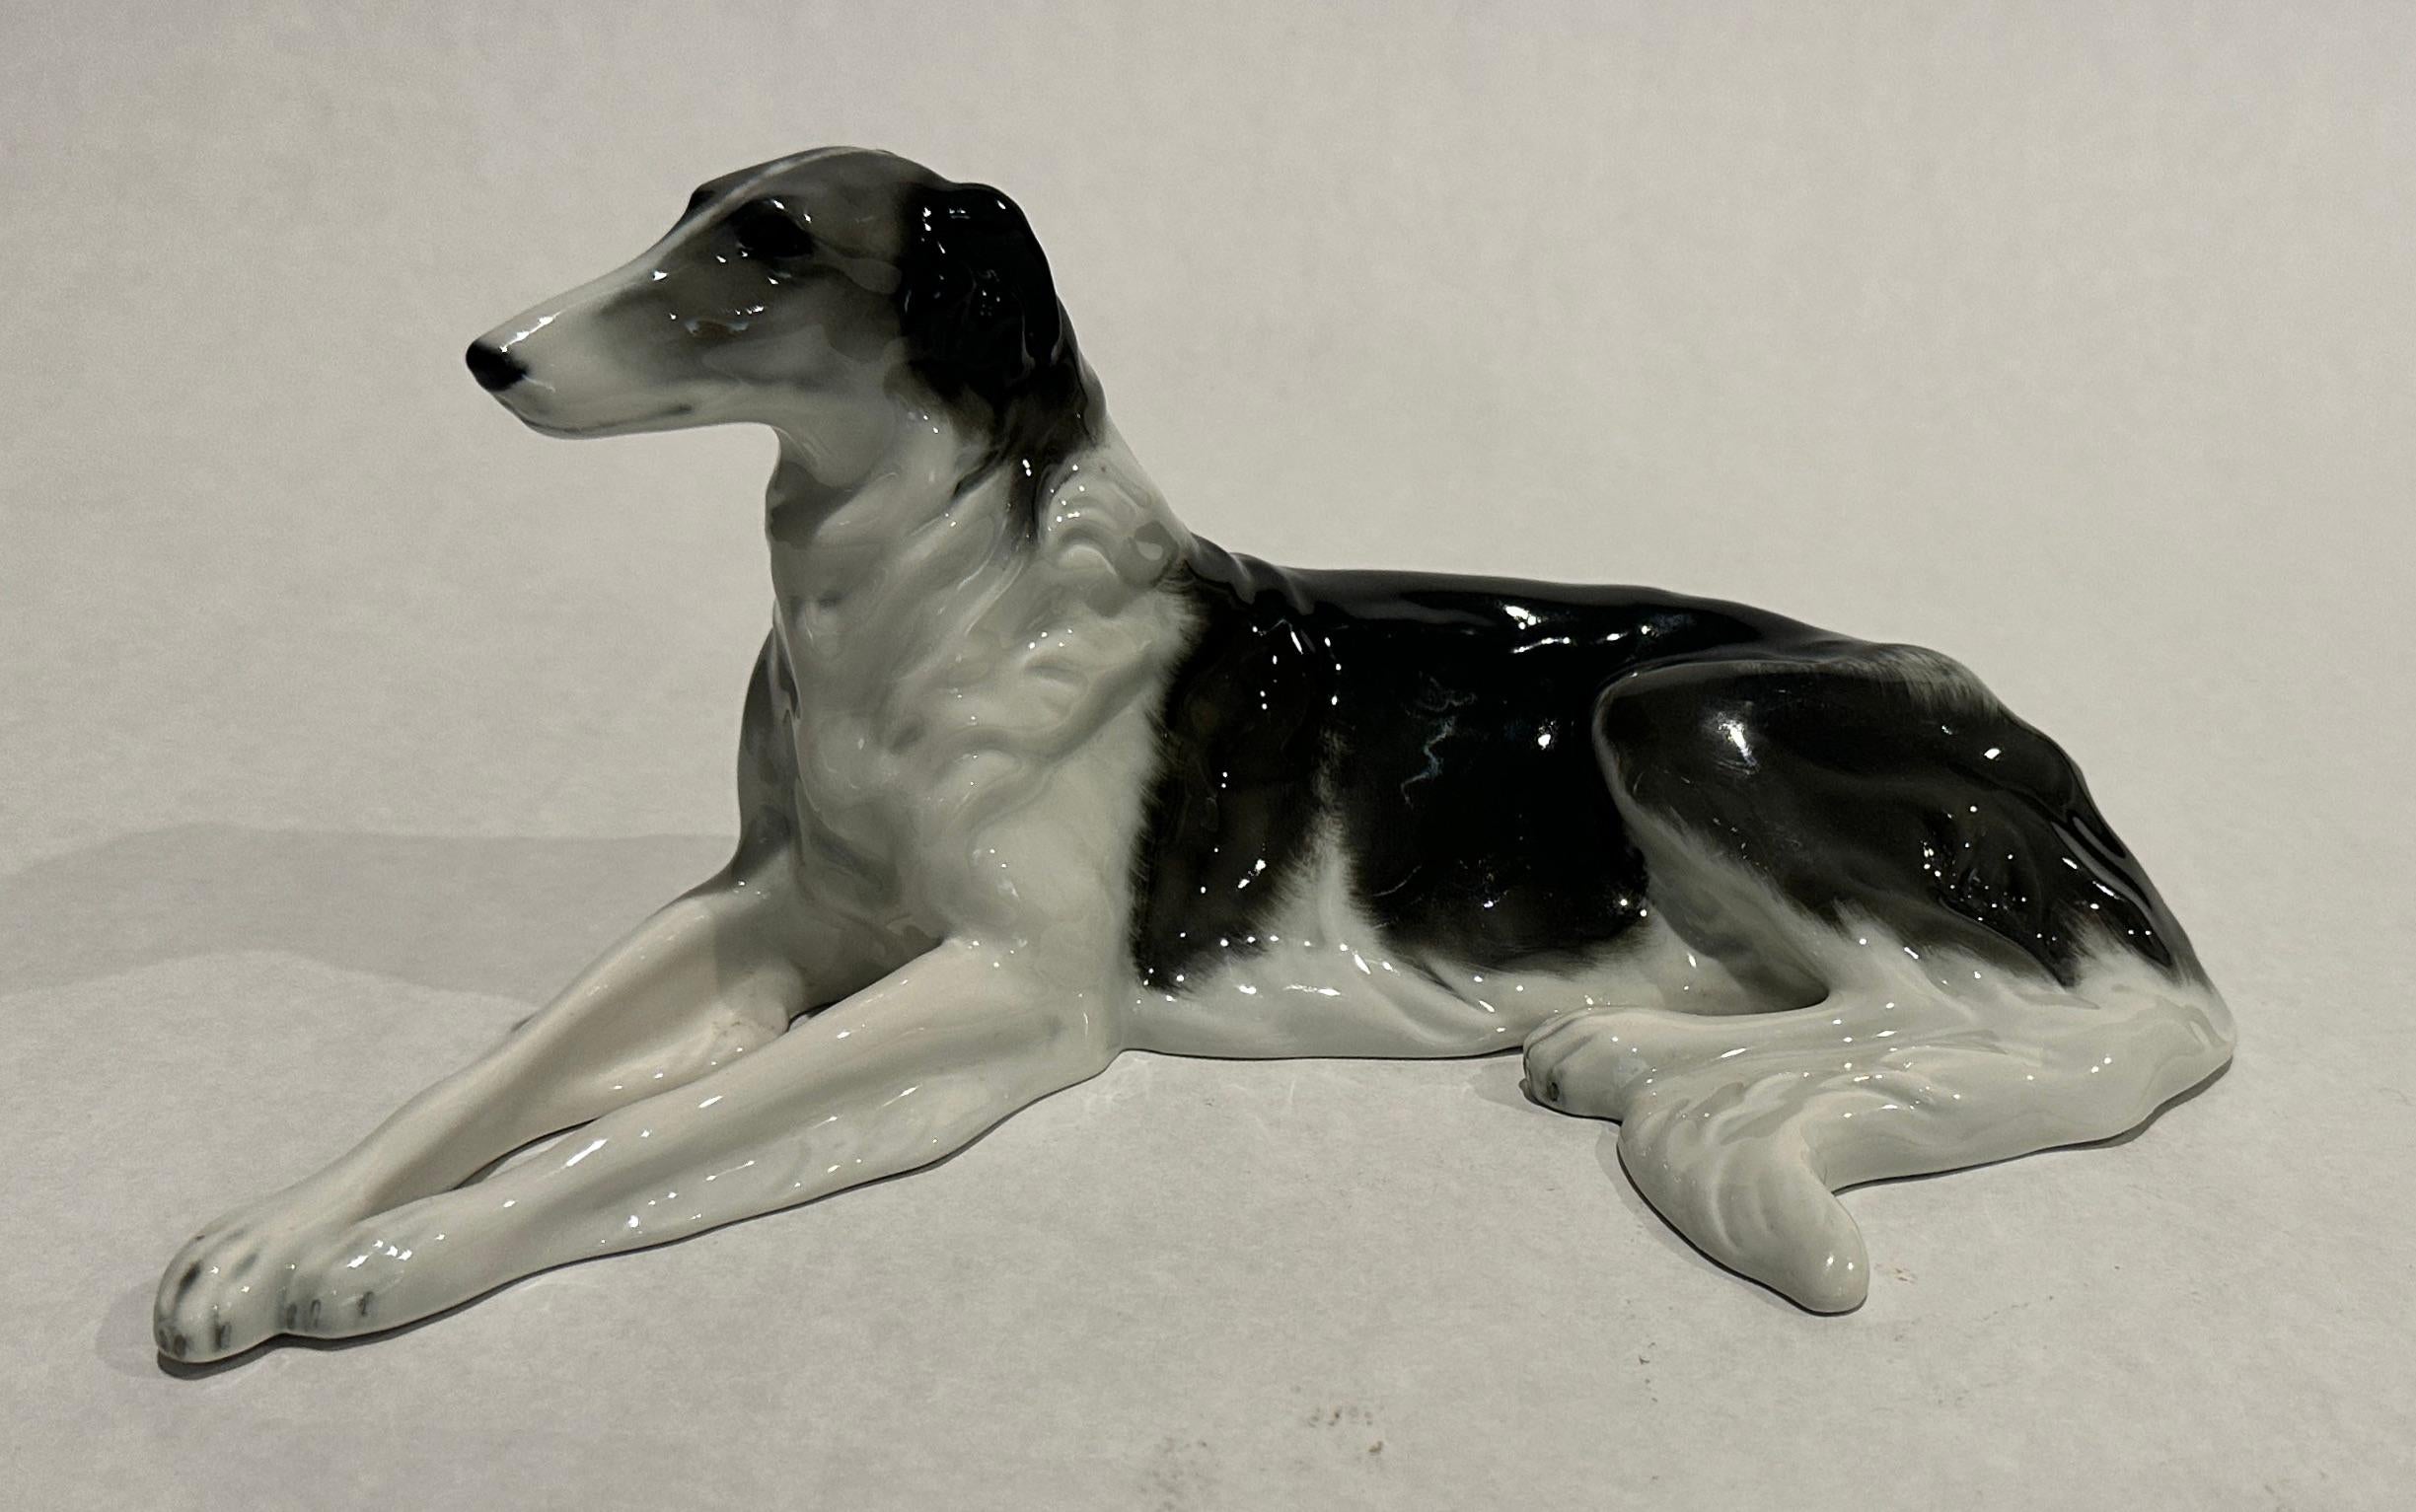 Sculpture canine en porcelaine, Borzoi/ Russian Wolfhound, représentant un Borzoi couché sur le sol avec les pattes avant tendues, peint en polychromie naturaliste, signée au dos au-dessus de l'arête de la patte. Cette figurine vintage détaillée de